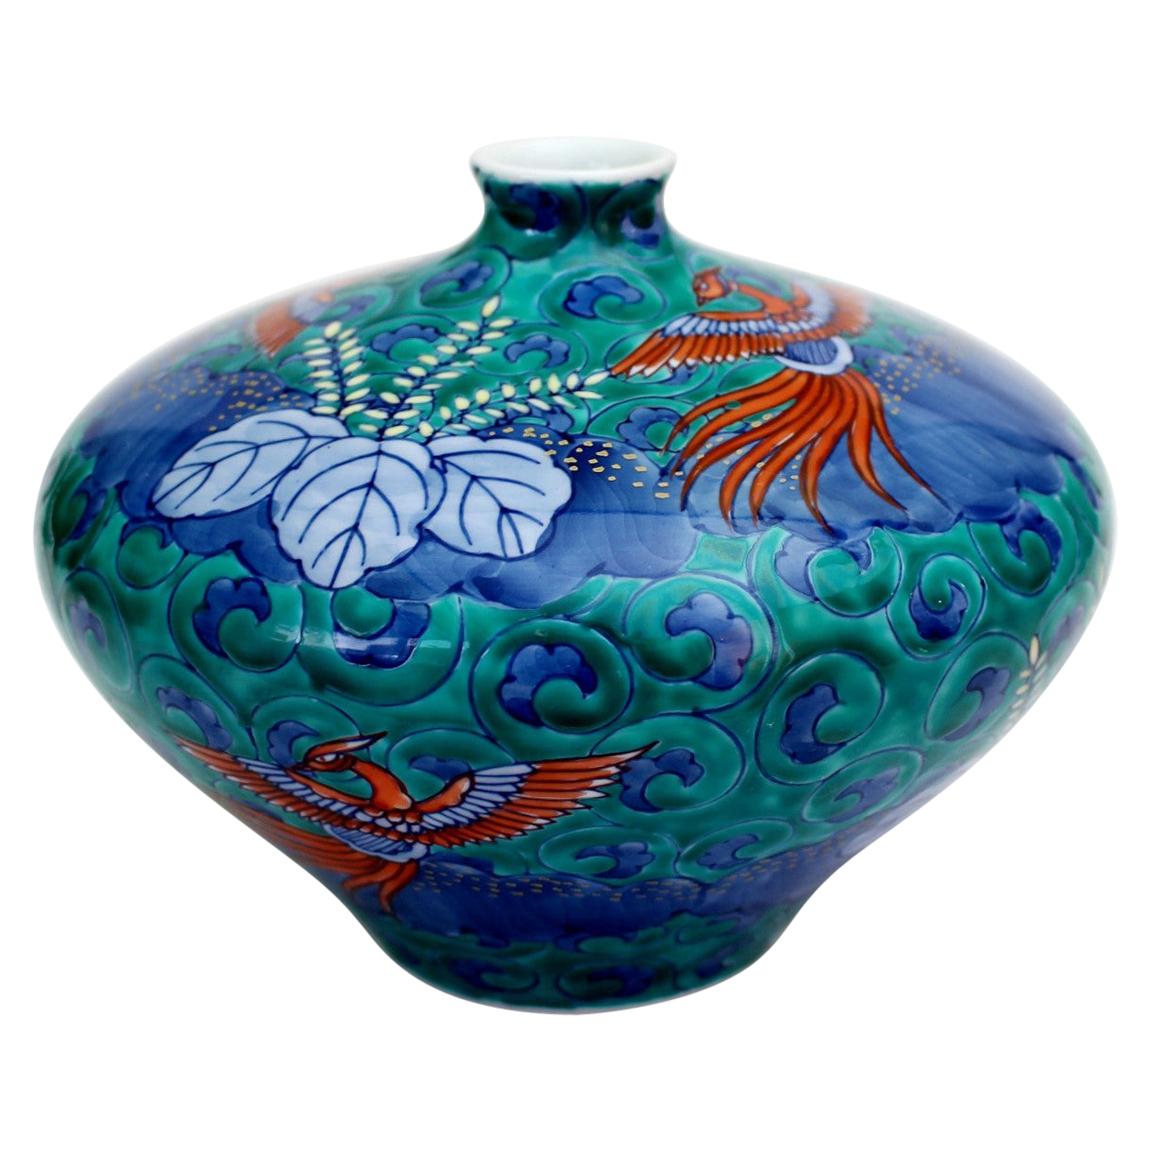 Green Porcelain Vase by Japanese Master Artist